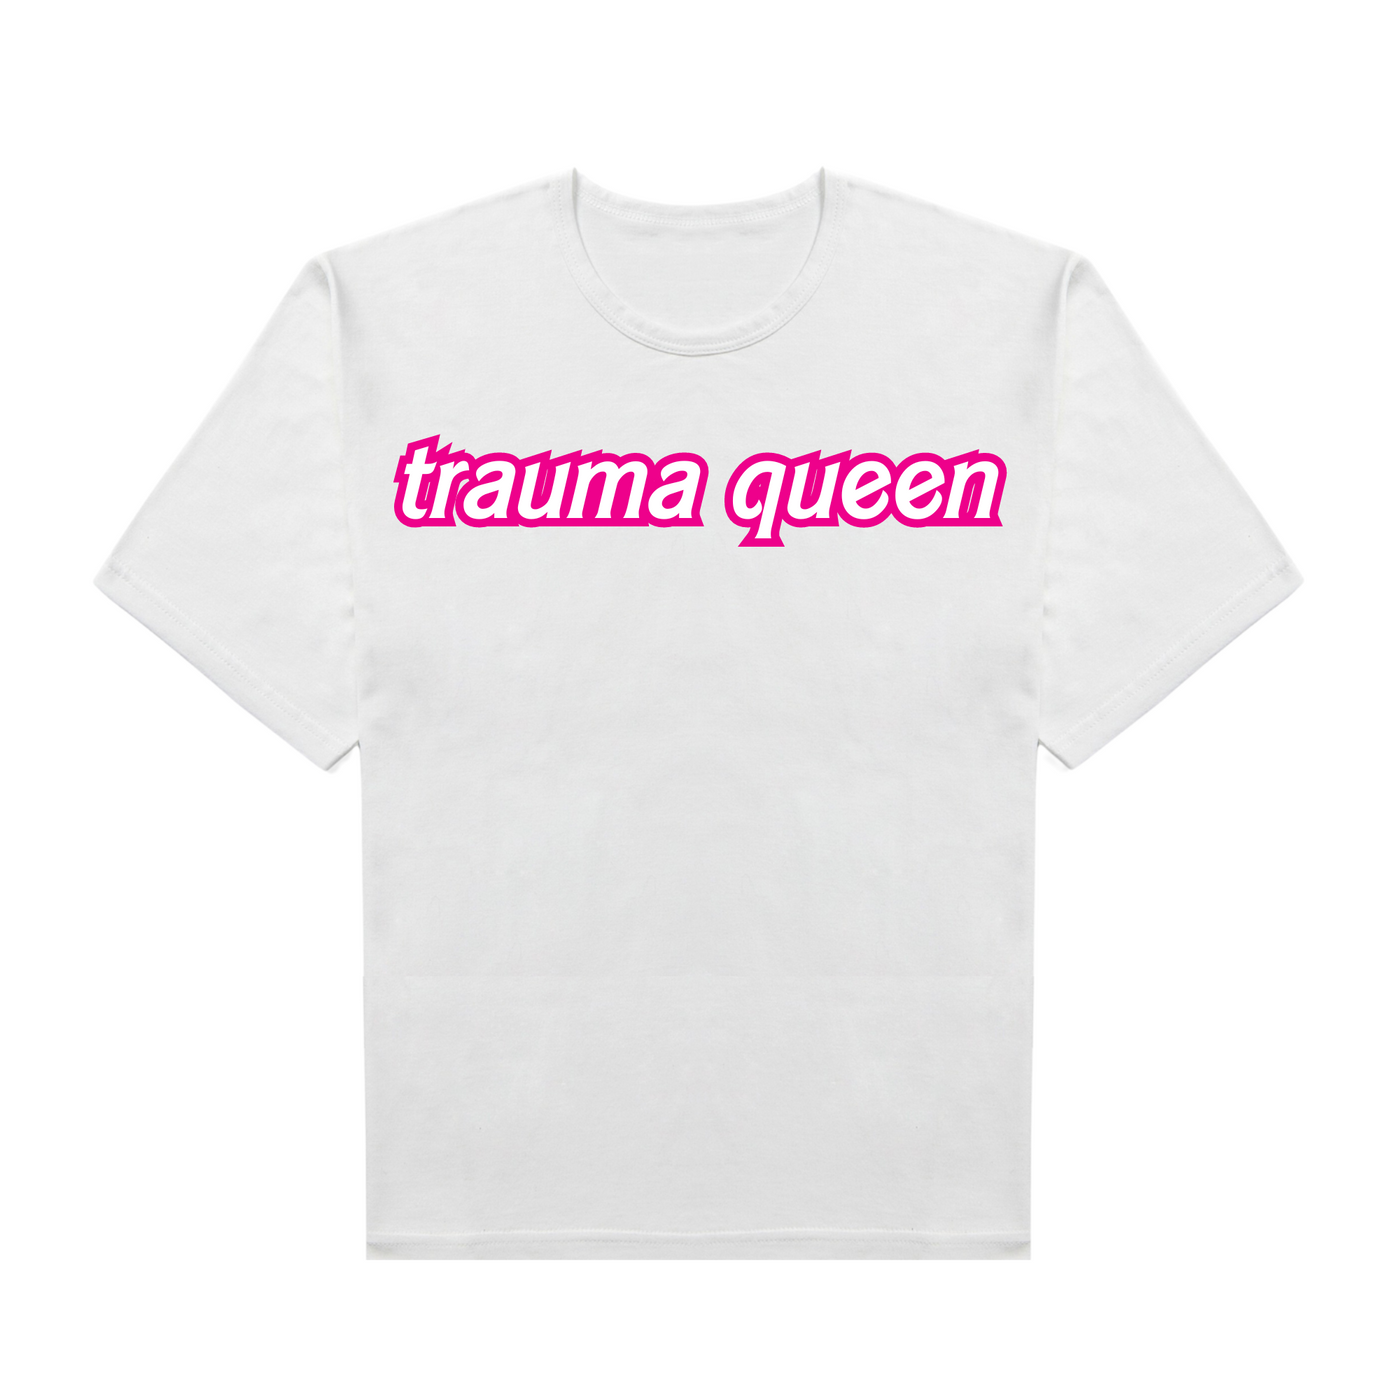 Trauma Queen